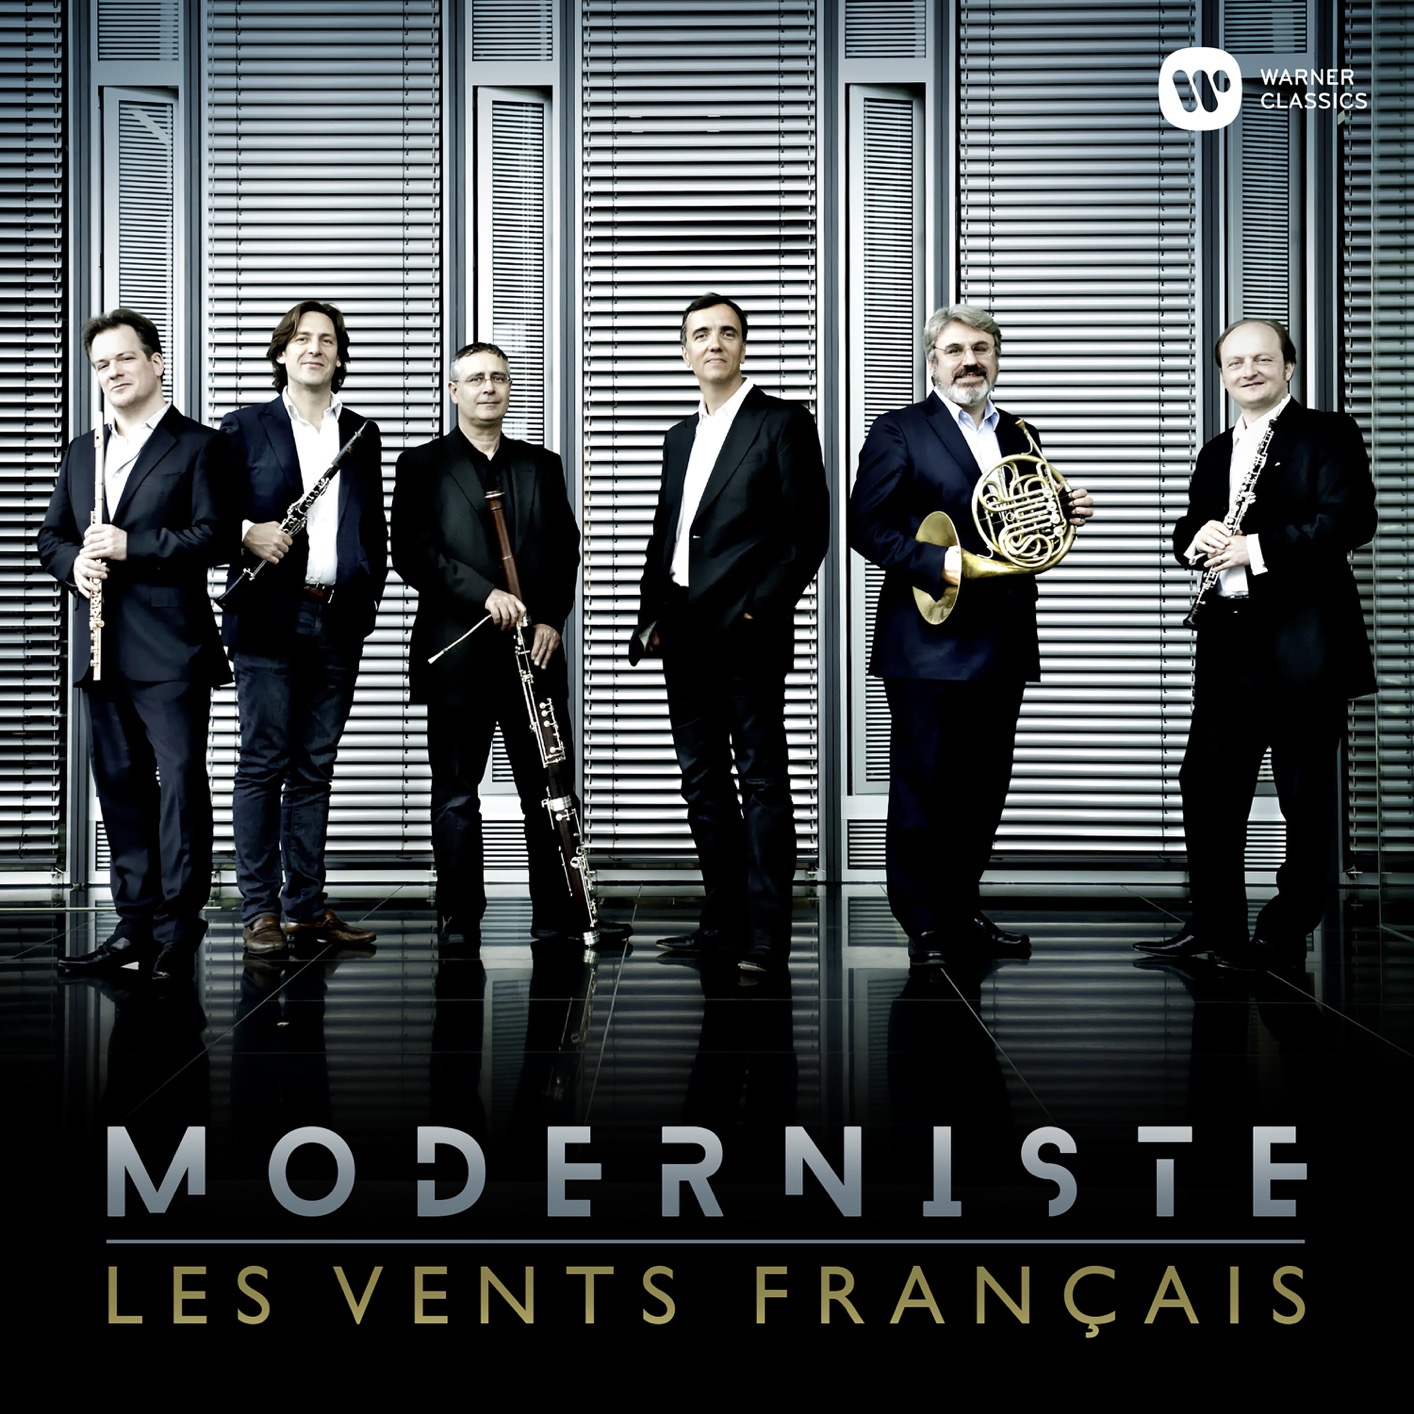 Les Vents Francais - Moderniste (2019) [FLAC 24bit/96kHz]